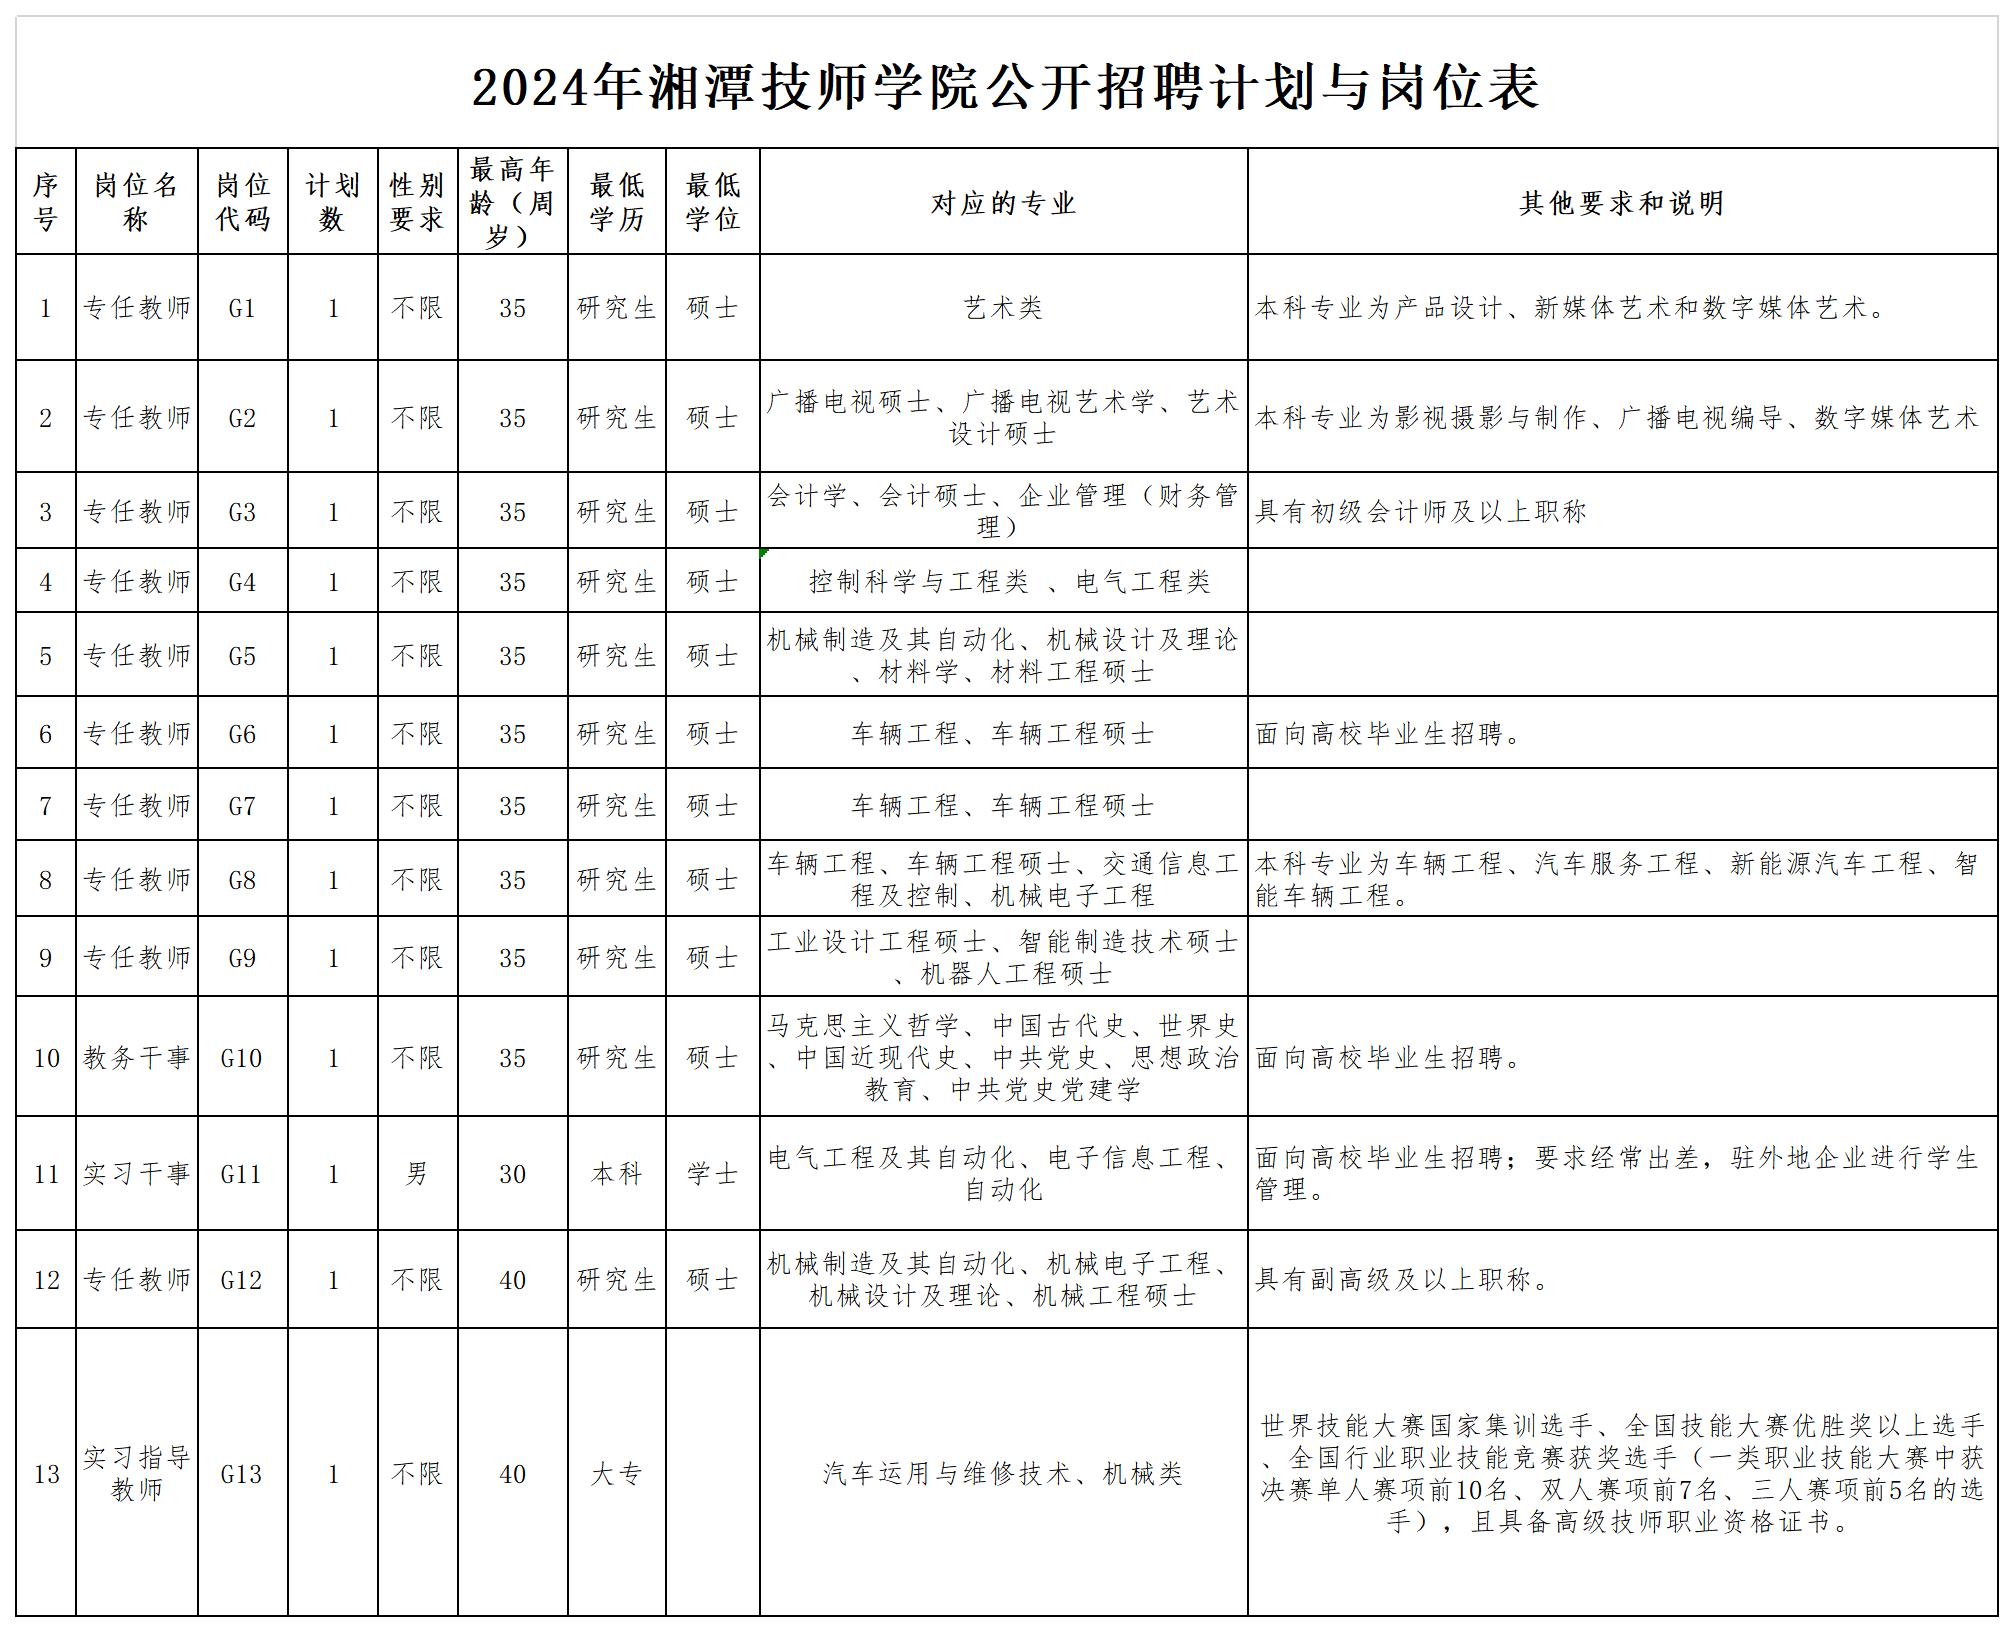 附件1：2024年湘潭技师学院公开招聘计划与岗位表(0423)_Sheet1.jpg